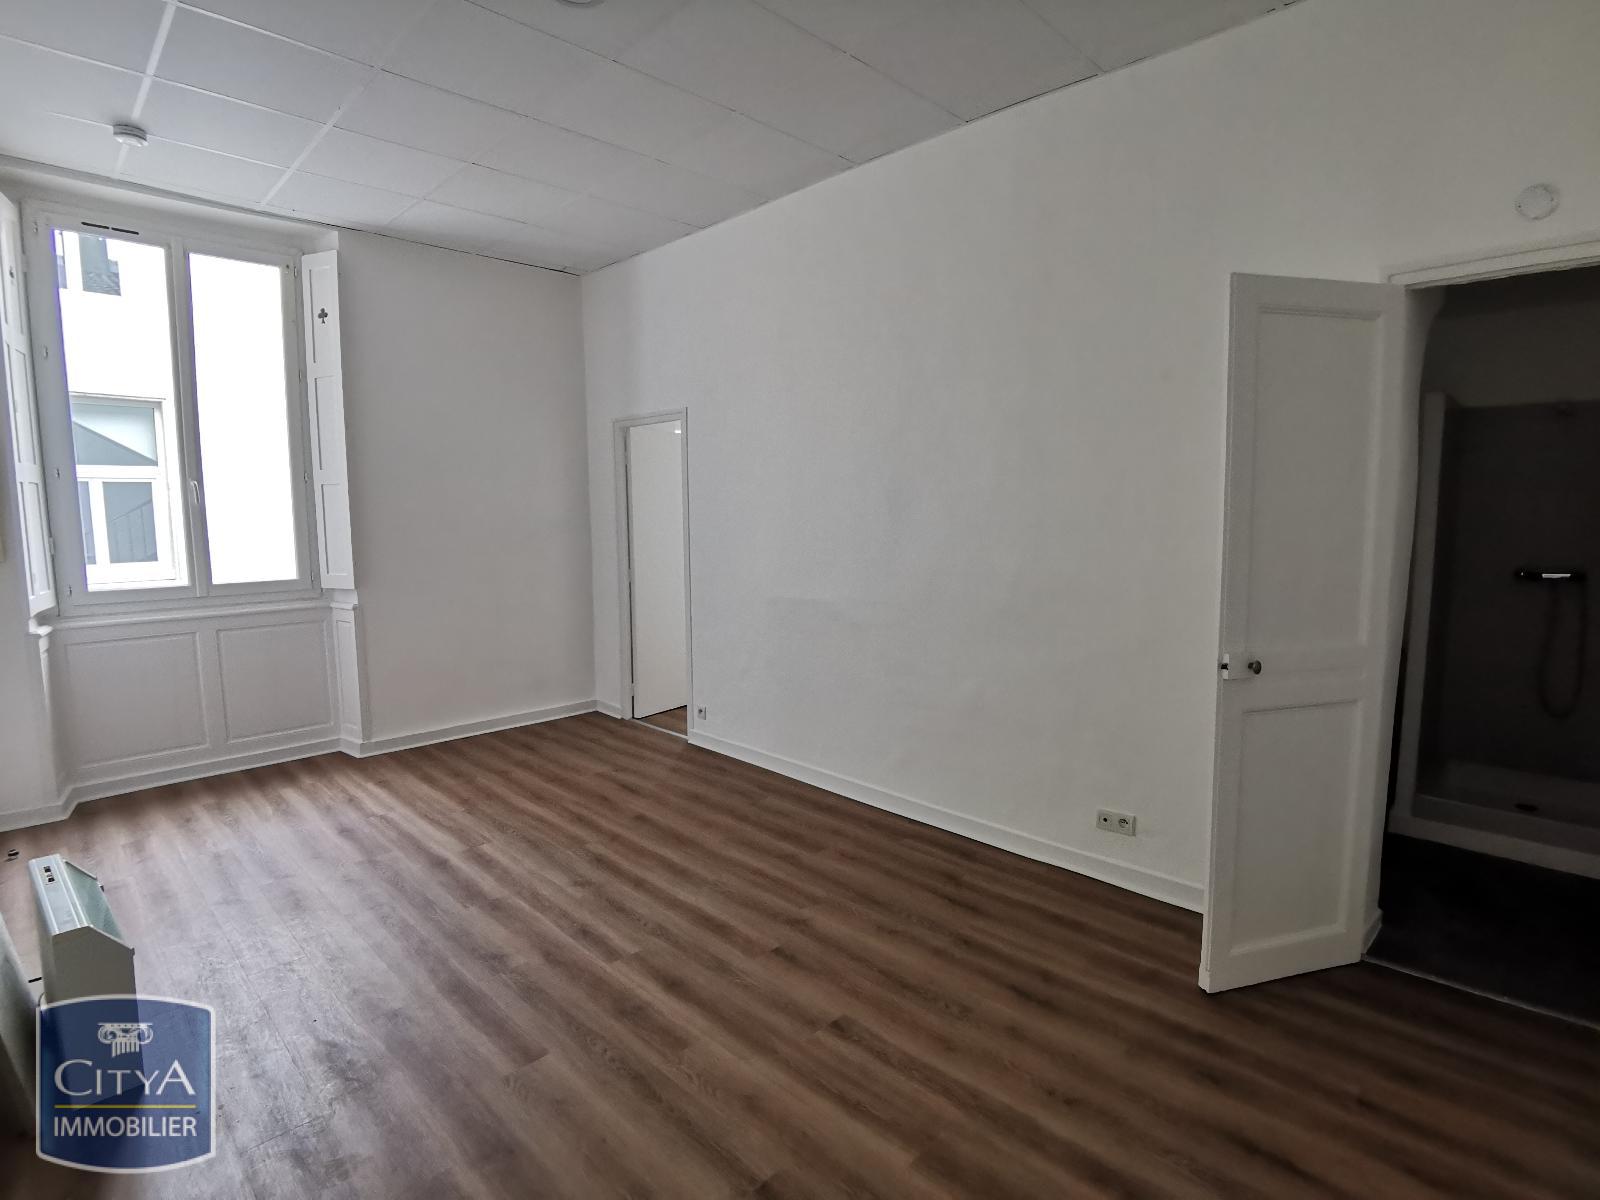 Appartement 1 pièce - 30m² - MONT DE MARSAN